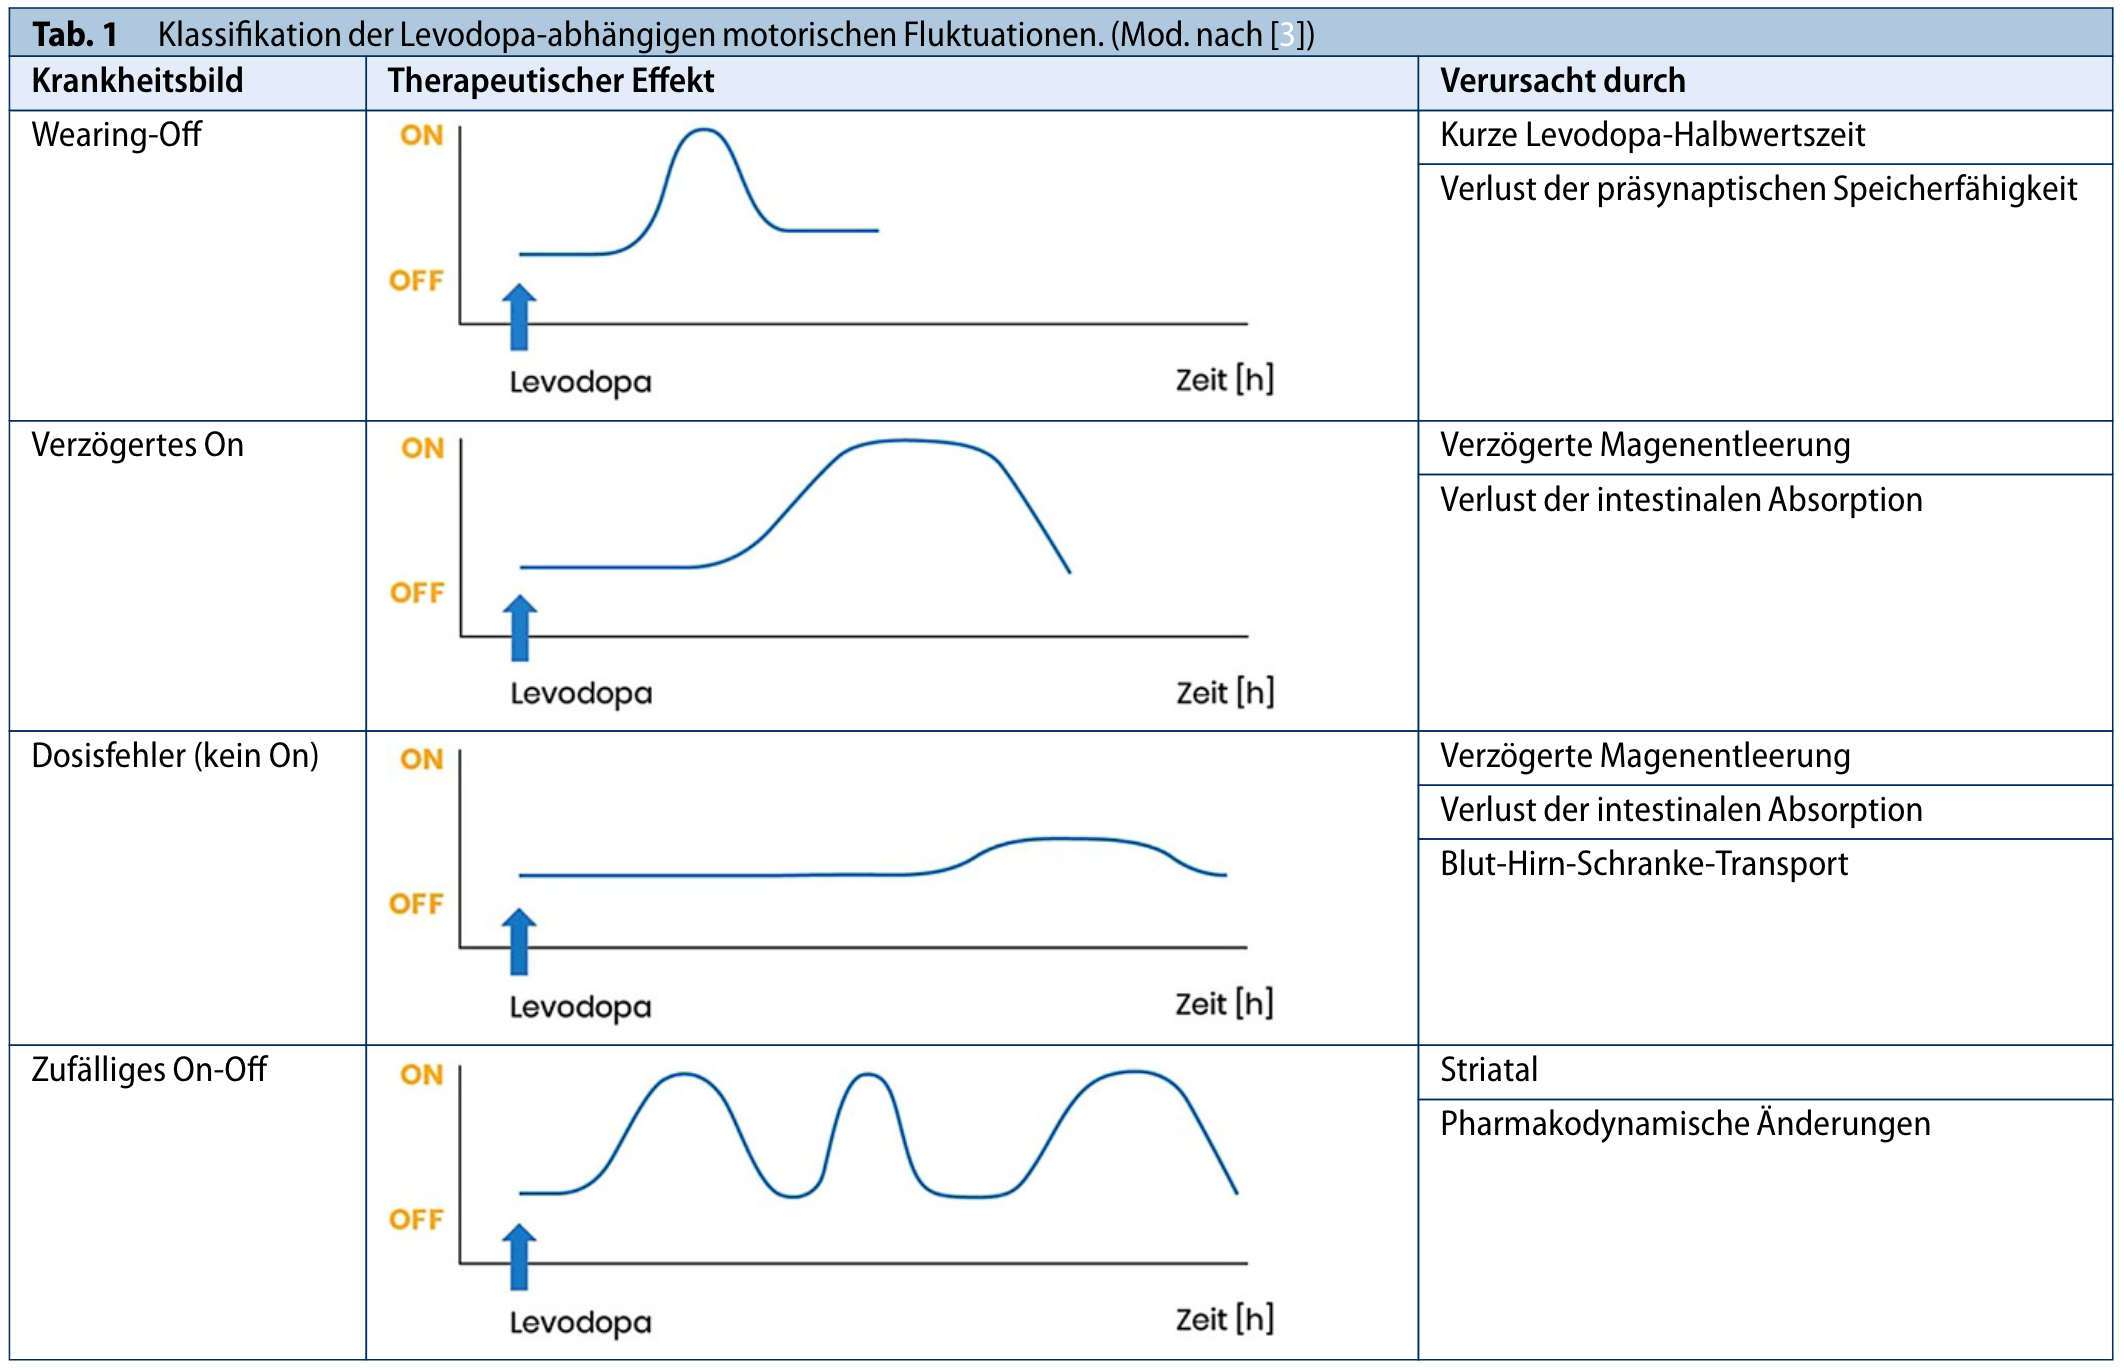 aus: Jost WH, Buhmann C, Classen J, et al. Stellenwert der COMT-Hemmer in der Therapie motorischer Fluktuationen. Nervenarzt. 2022;93(10):1035-1045.